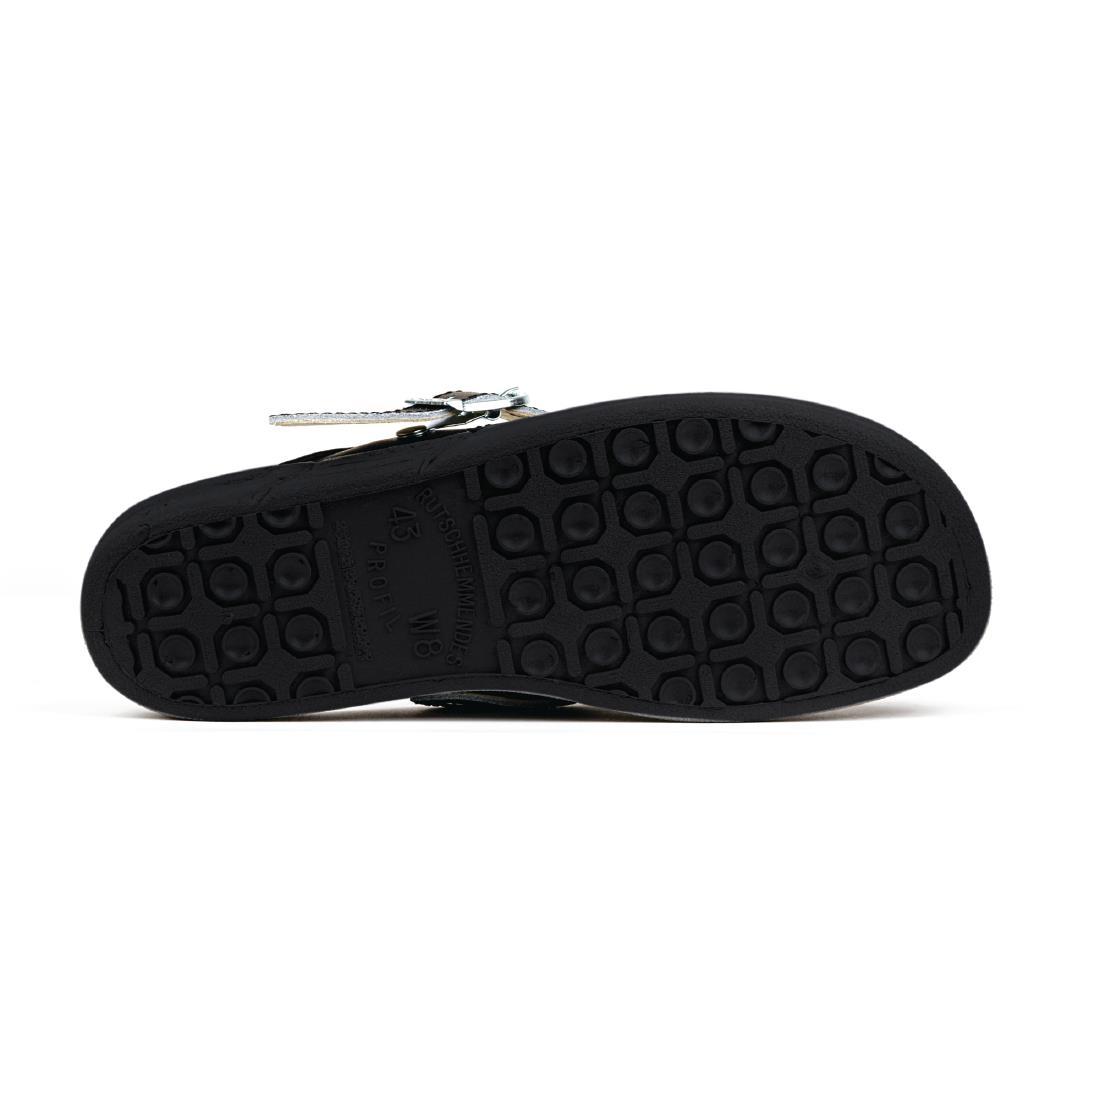 Abeba Microfibre Clogs Black Size 46 - A898-46  - 4